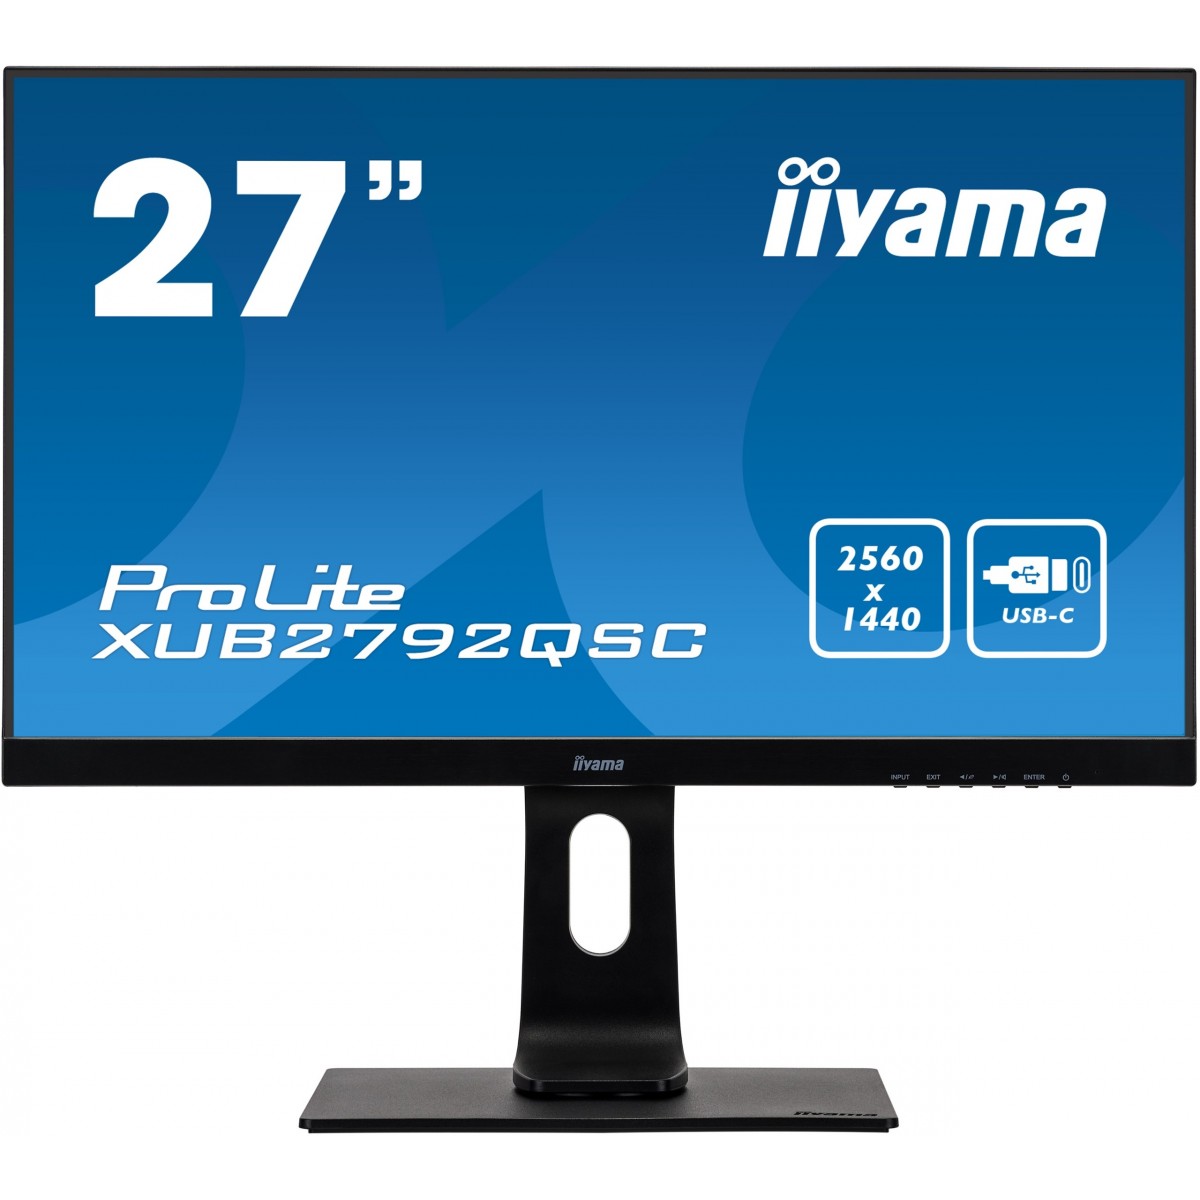 Iiyama 27i ETE IPS-panel 2560x1440 13cm HeightAdj